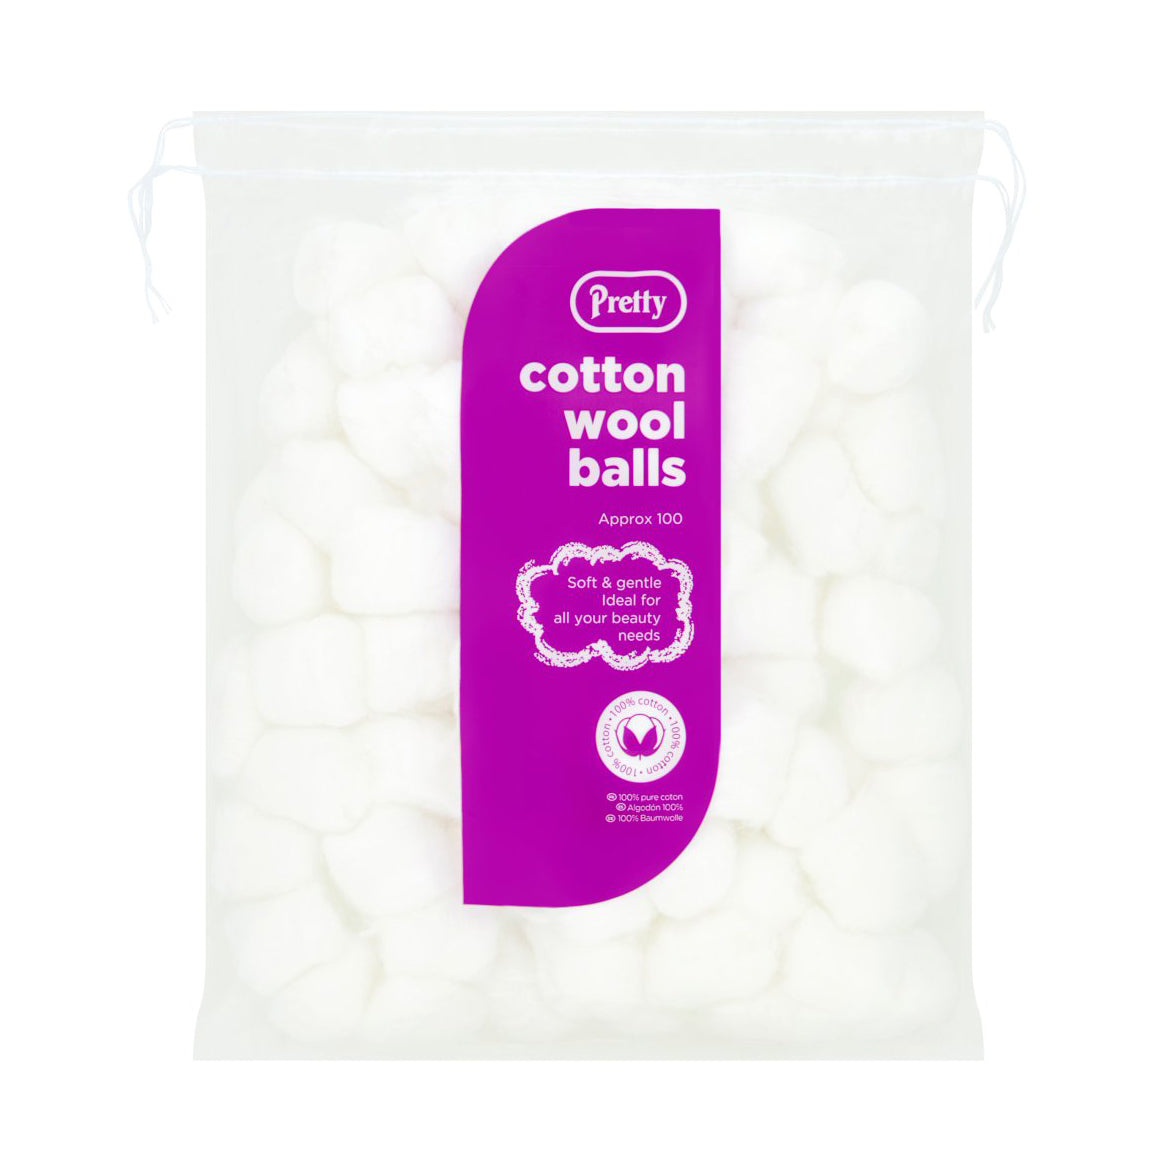 Pretty White Cotton Wool Balls